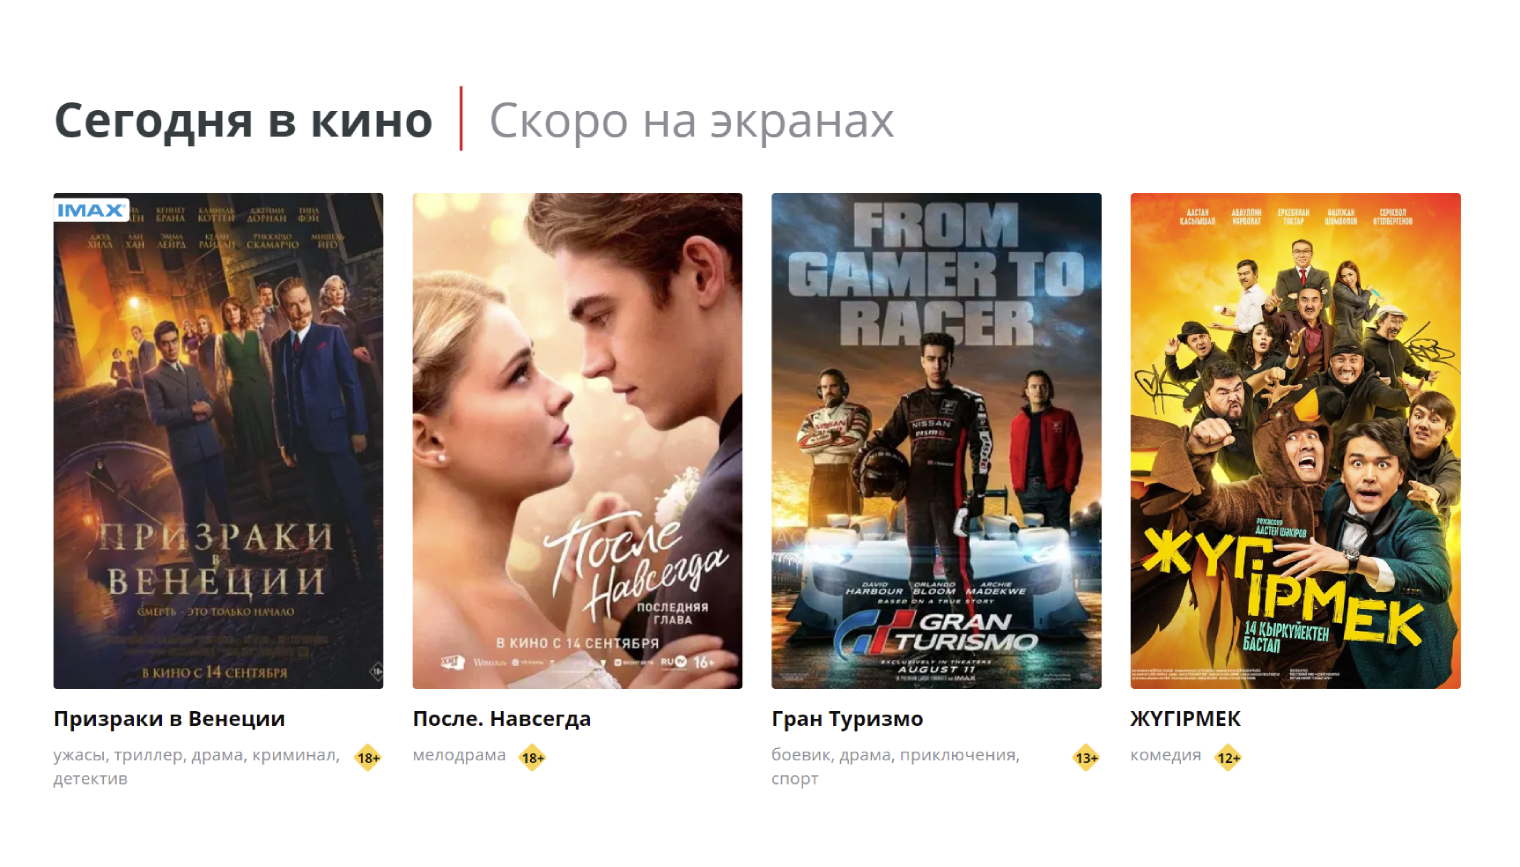 Тем, кто интересуется казахстанским кинематографом, тоже будет что посмотреть: в афишах много комедий и драм местного производства. Источник: kinopark.kz